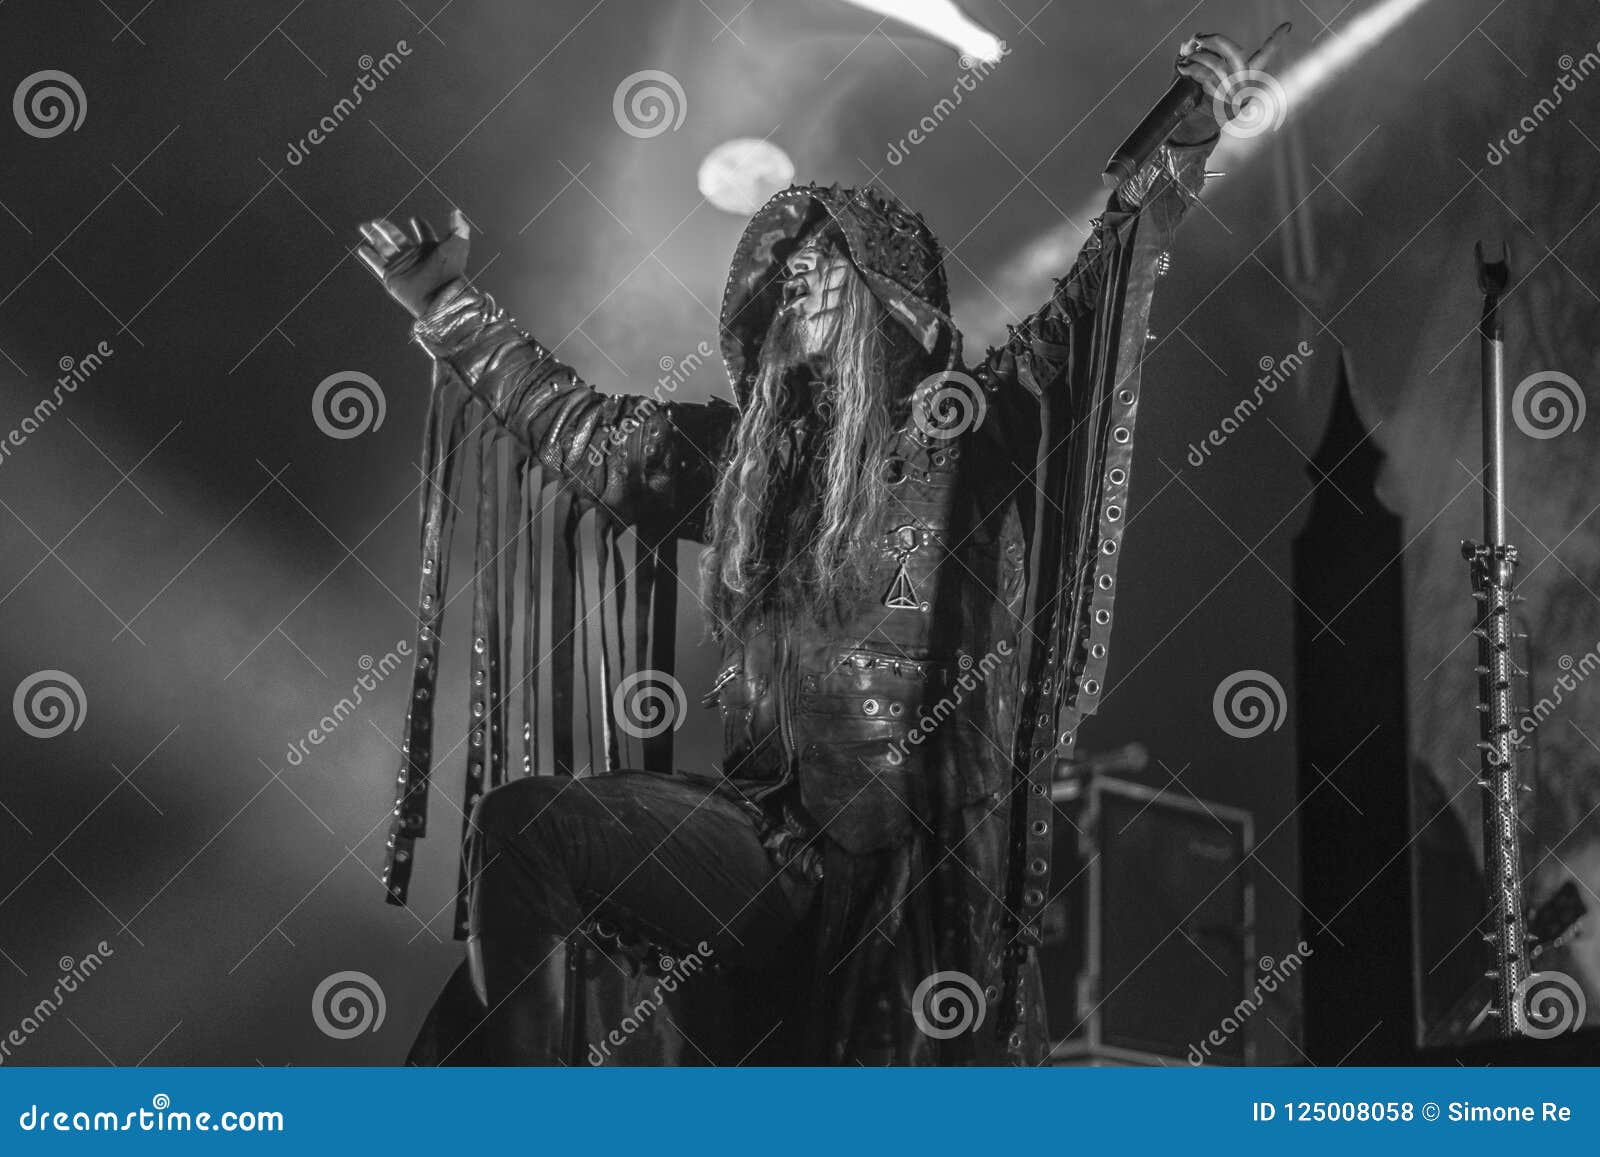 Shagrath, This is Shagrath, vocalist in a norwegian Black M…